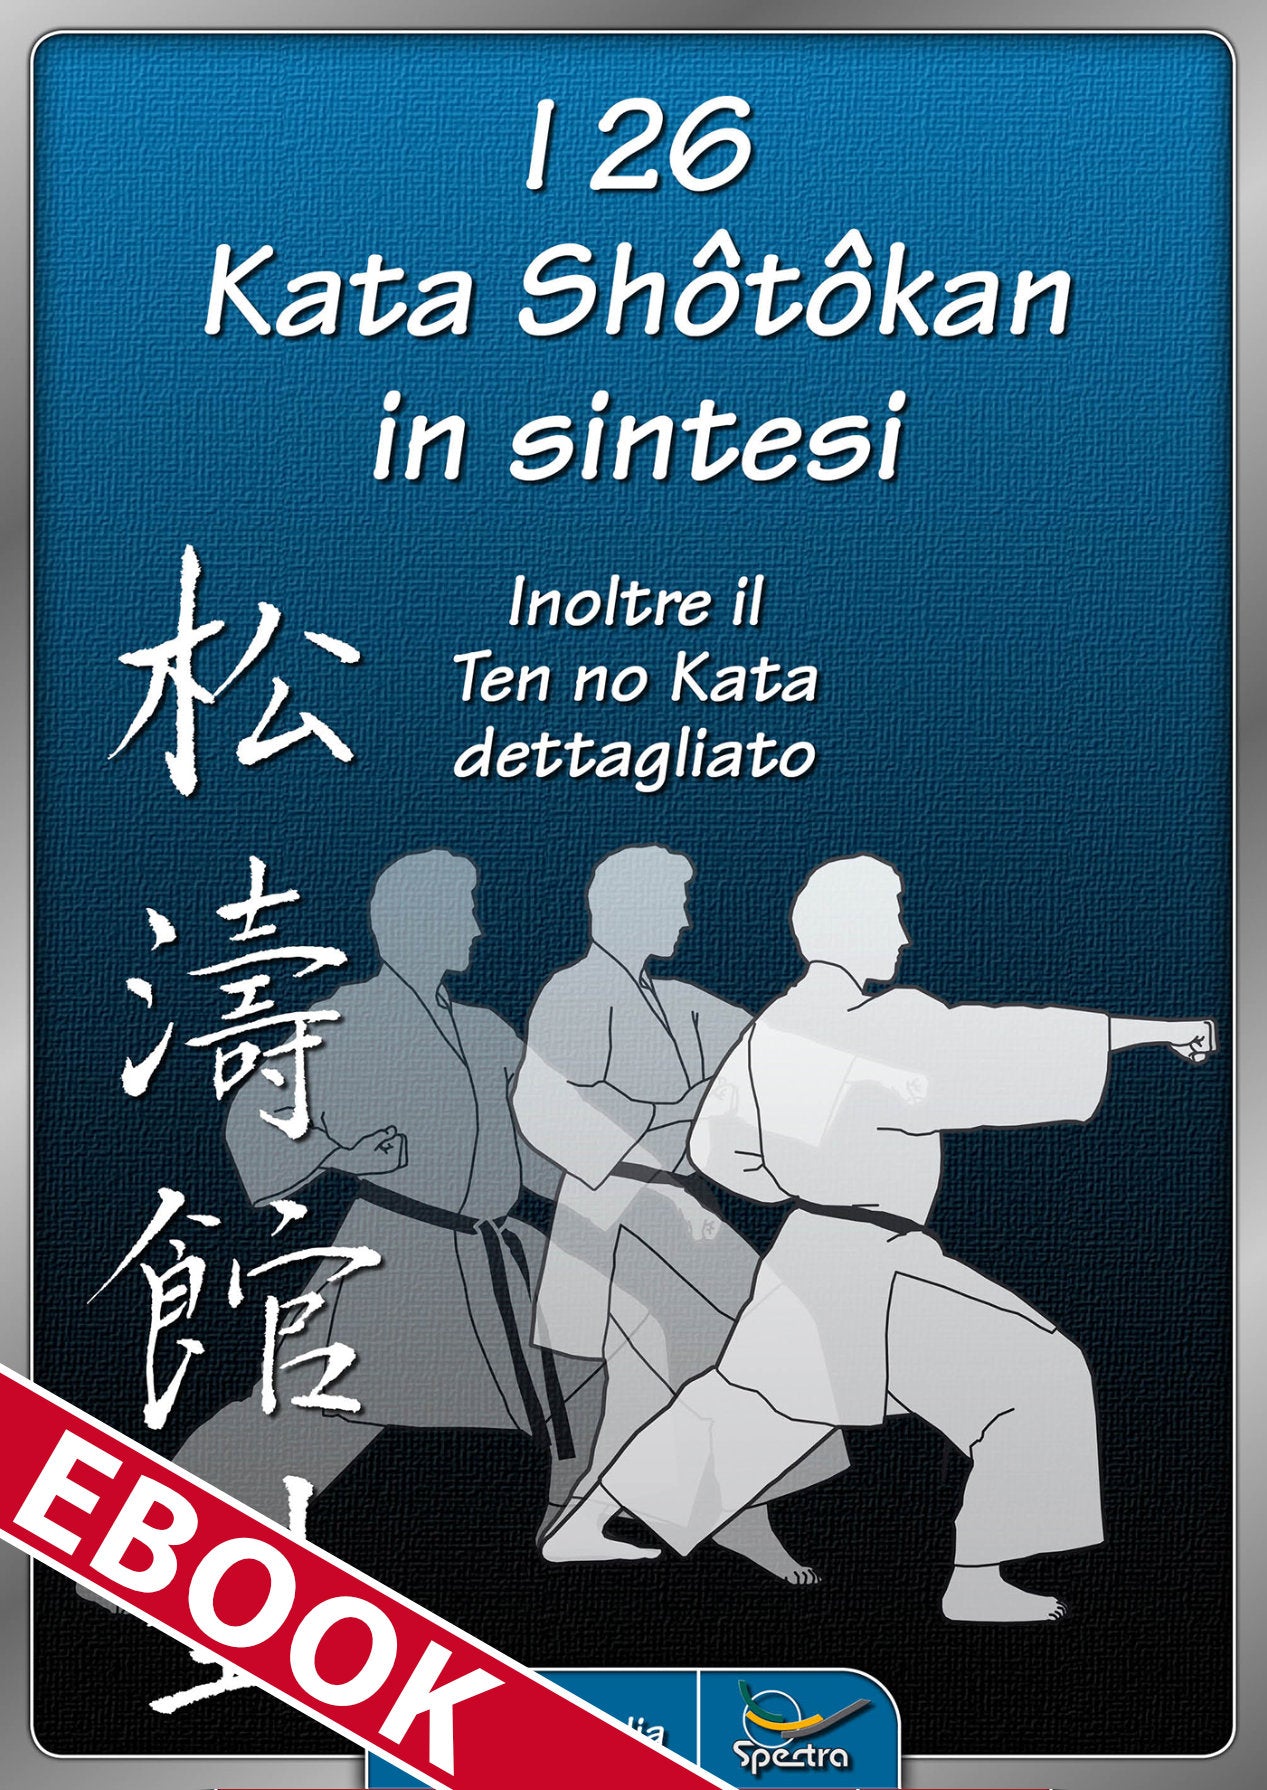 🇮🇹 eBook | Die 26 Shōtōkan-Kata im Überblick